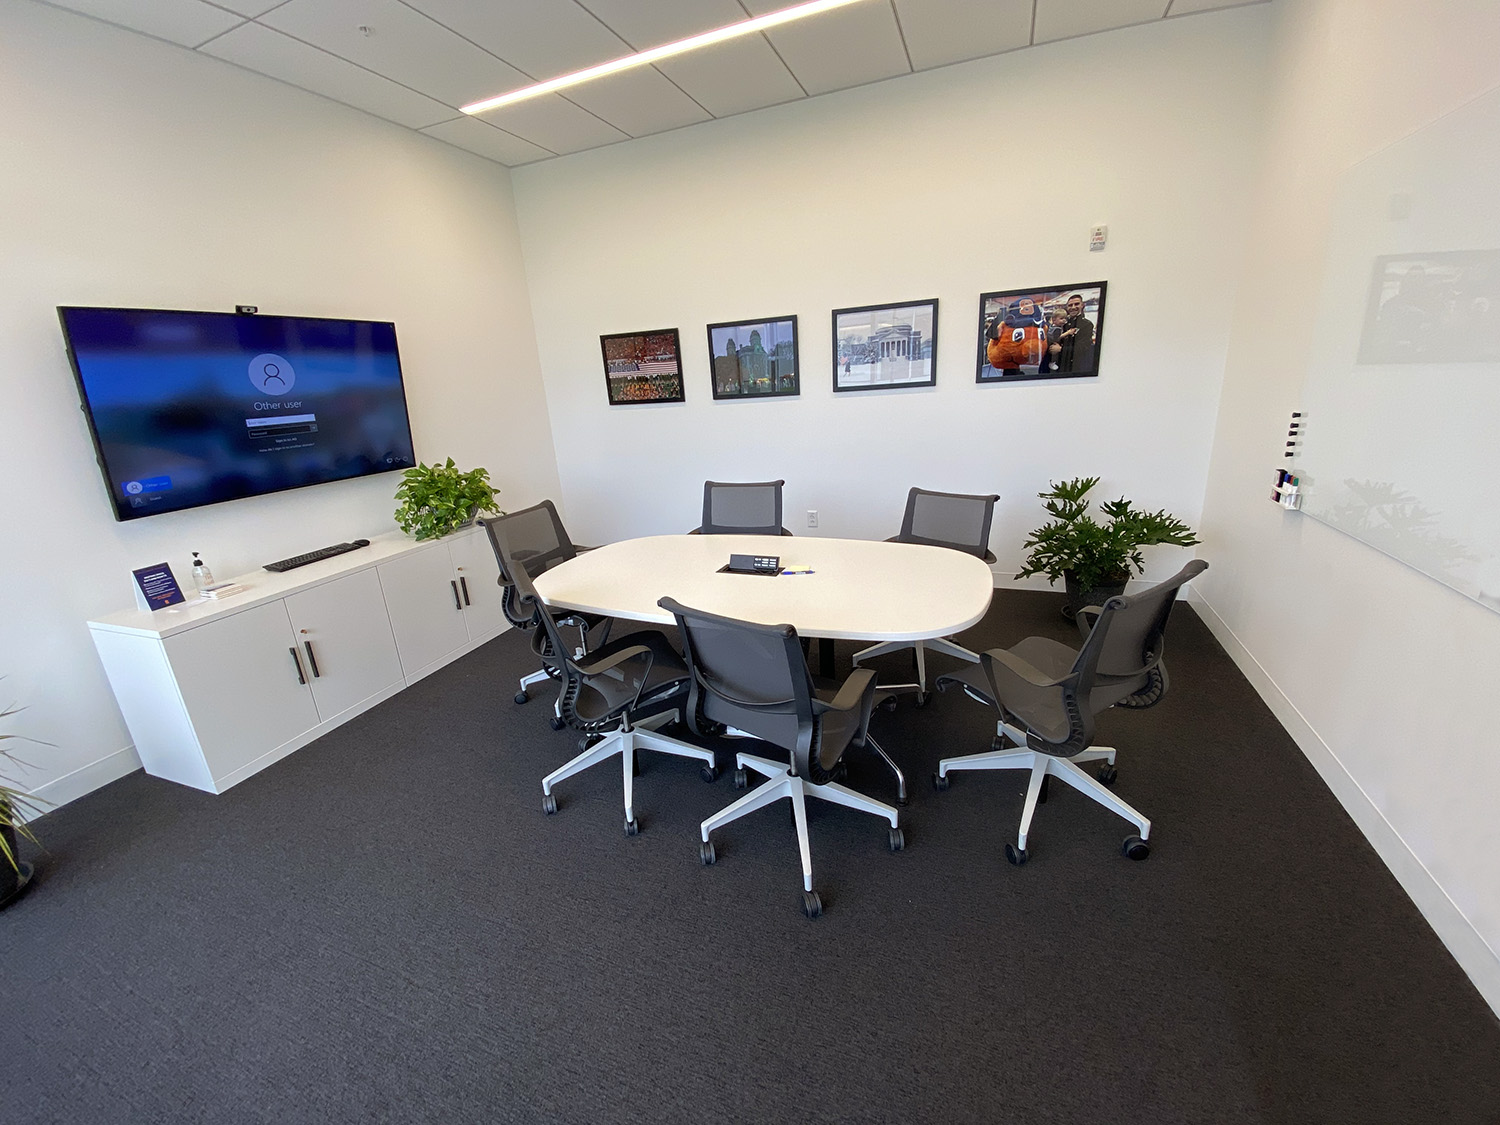 301 会议室是 NVRC 内较为典型的正式会议空间